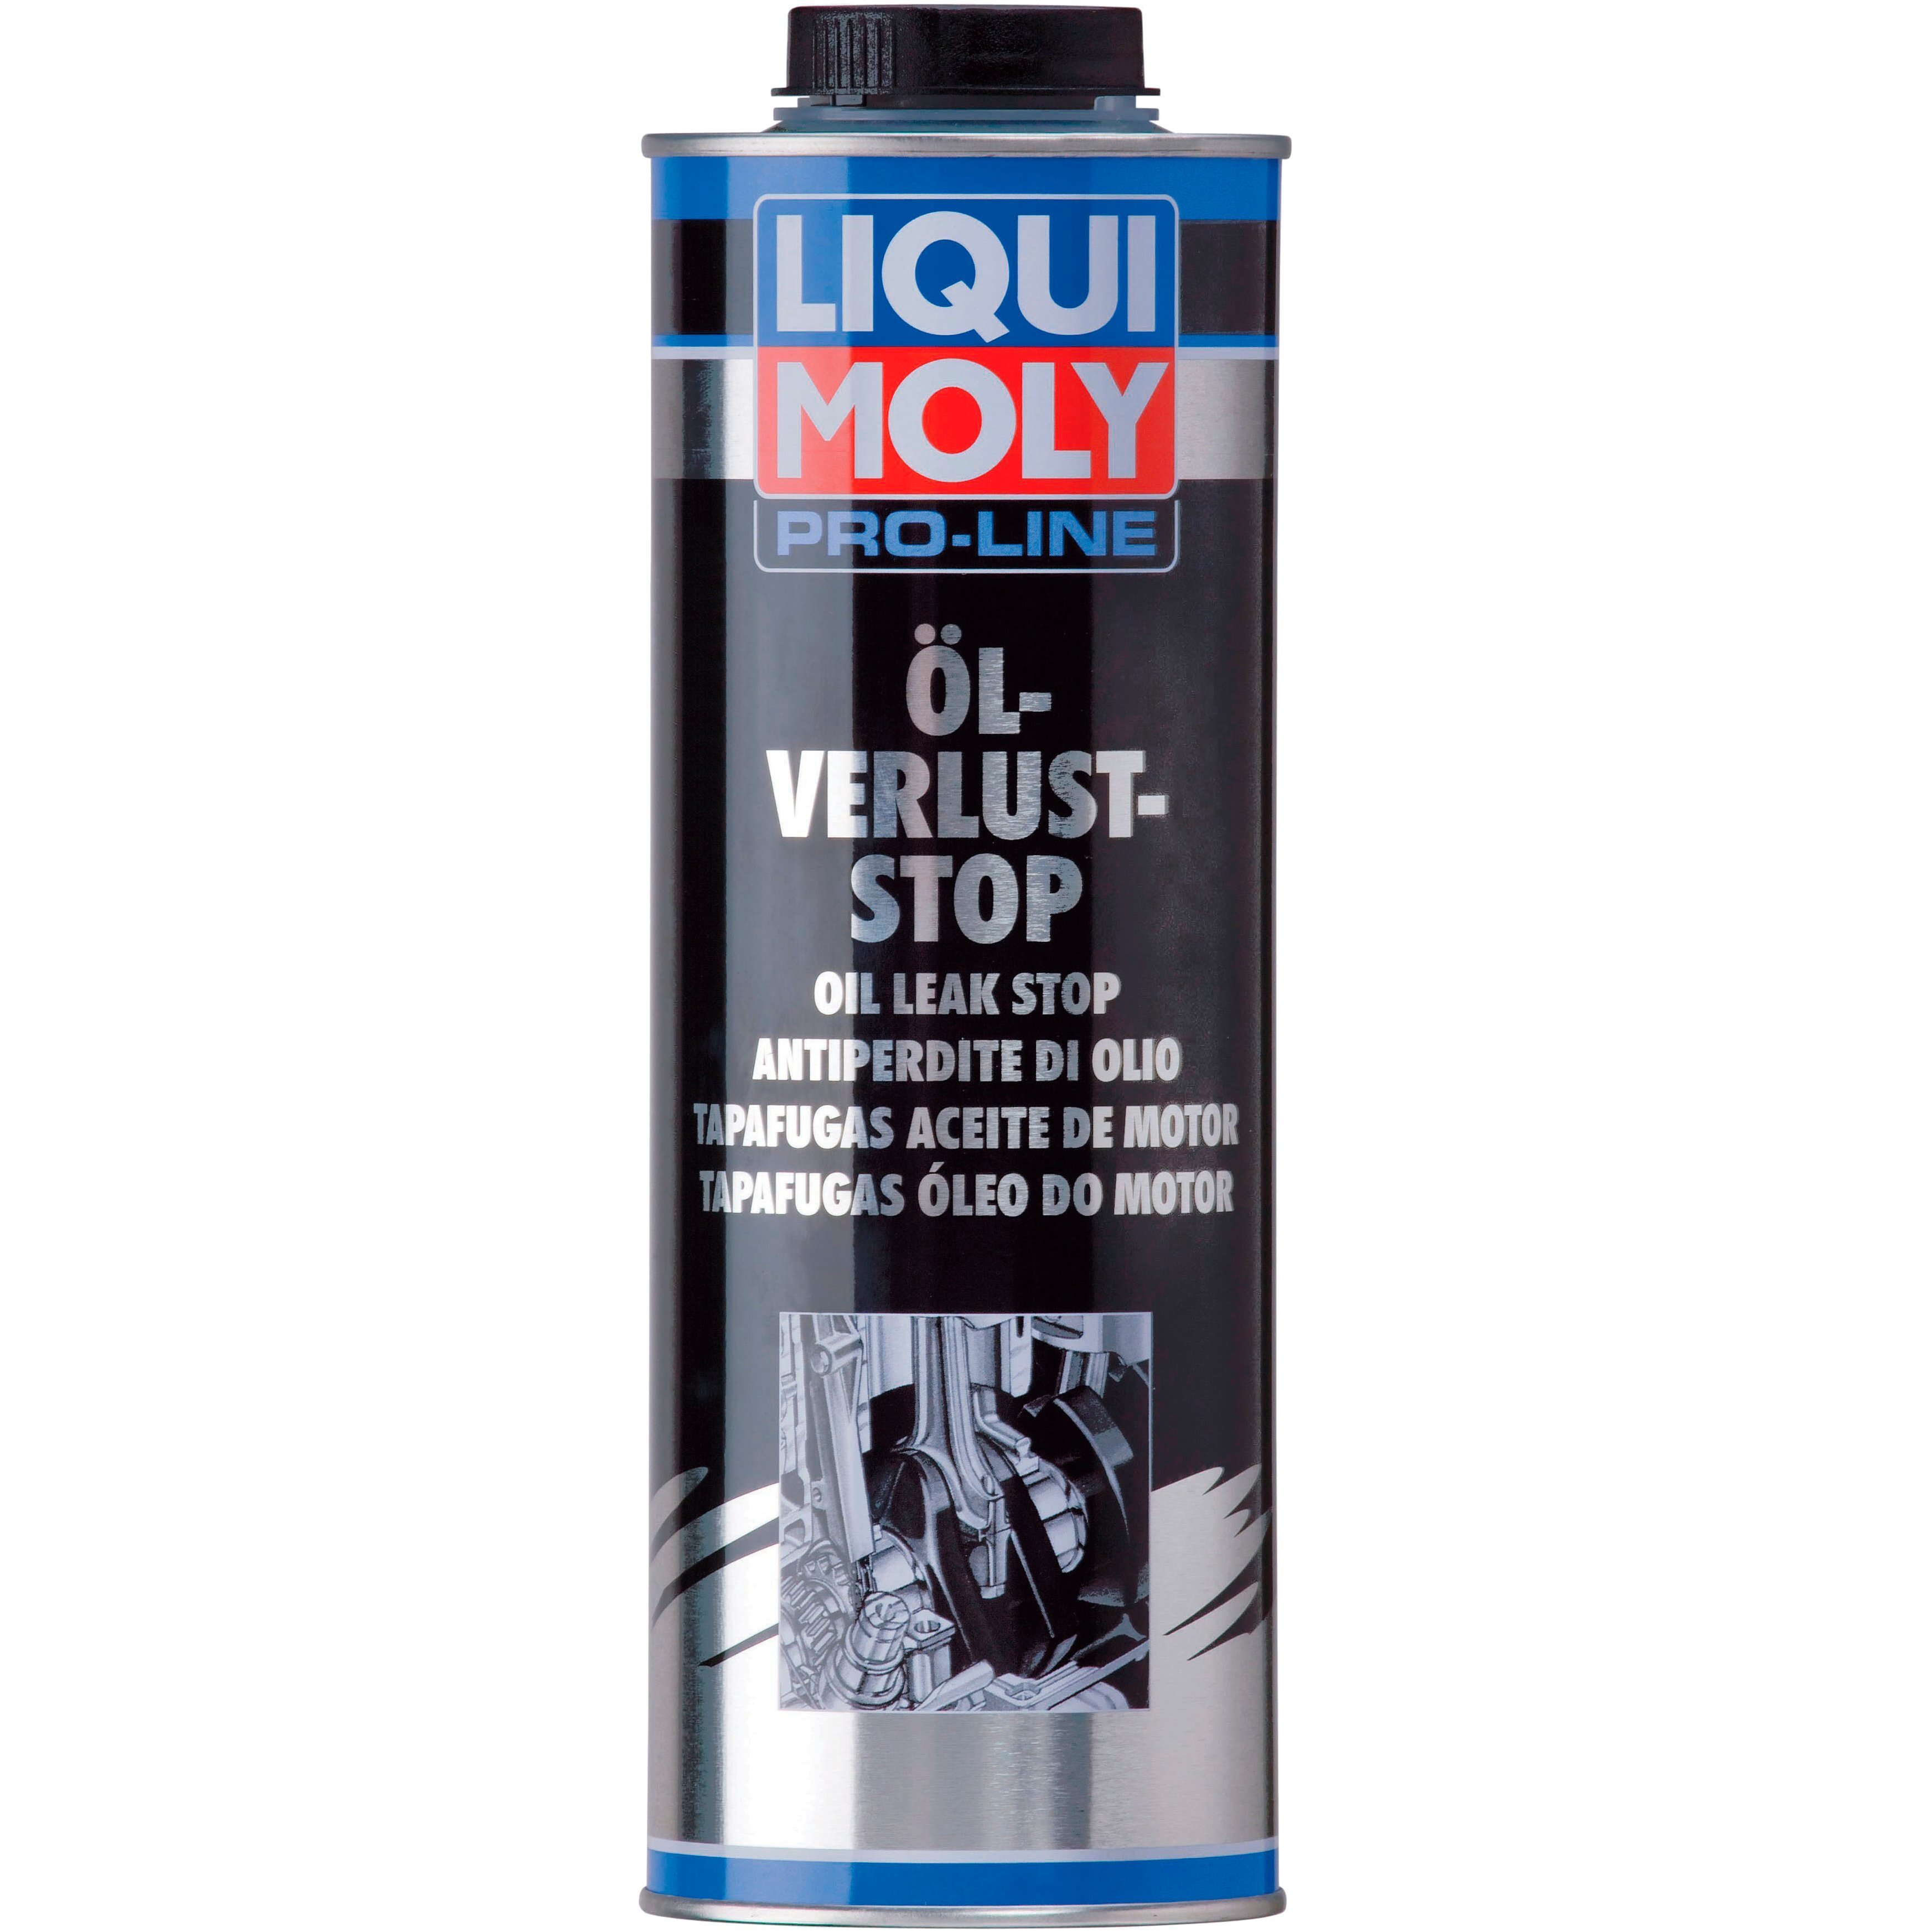 Засіб Liqui Moly для припинення витоку моторної оливи Pro-Line Ol-Verlust-Stop 1л (4100420051821)фото1